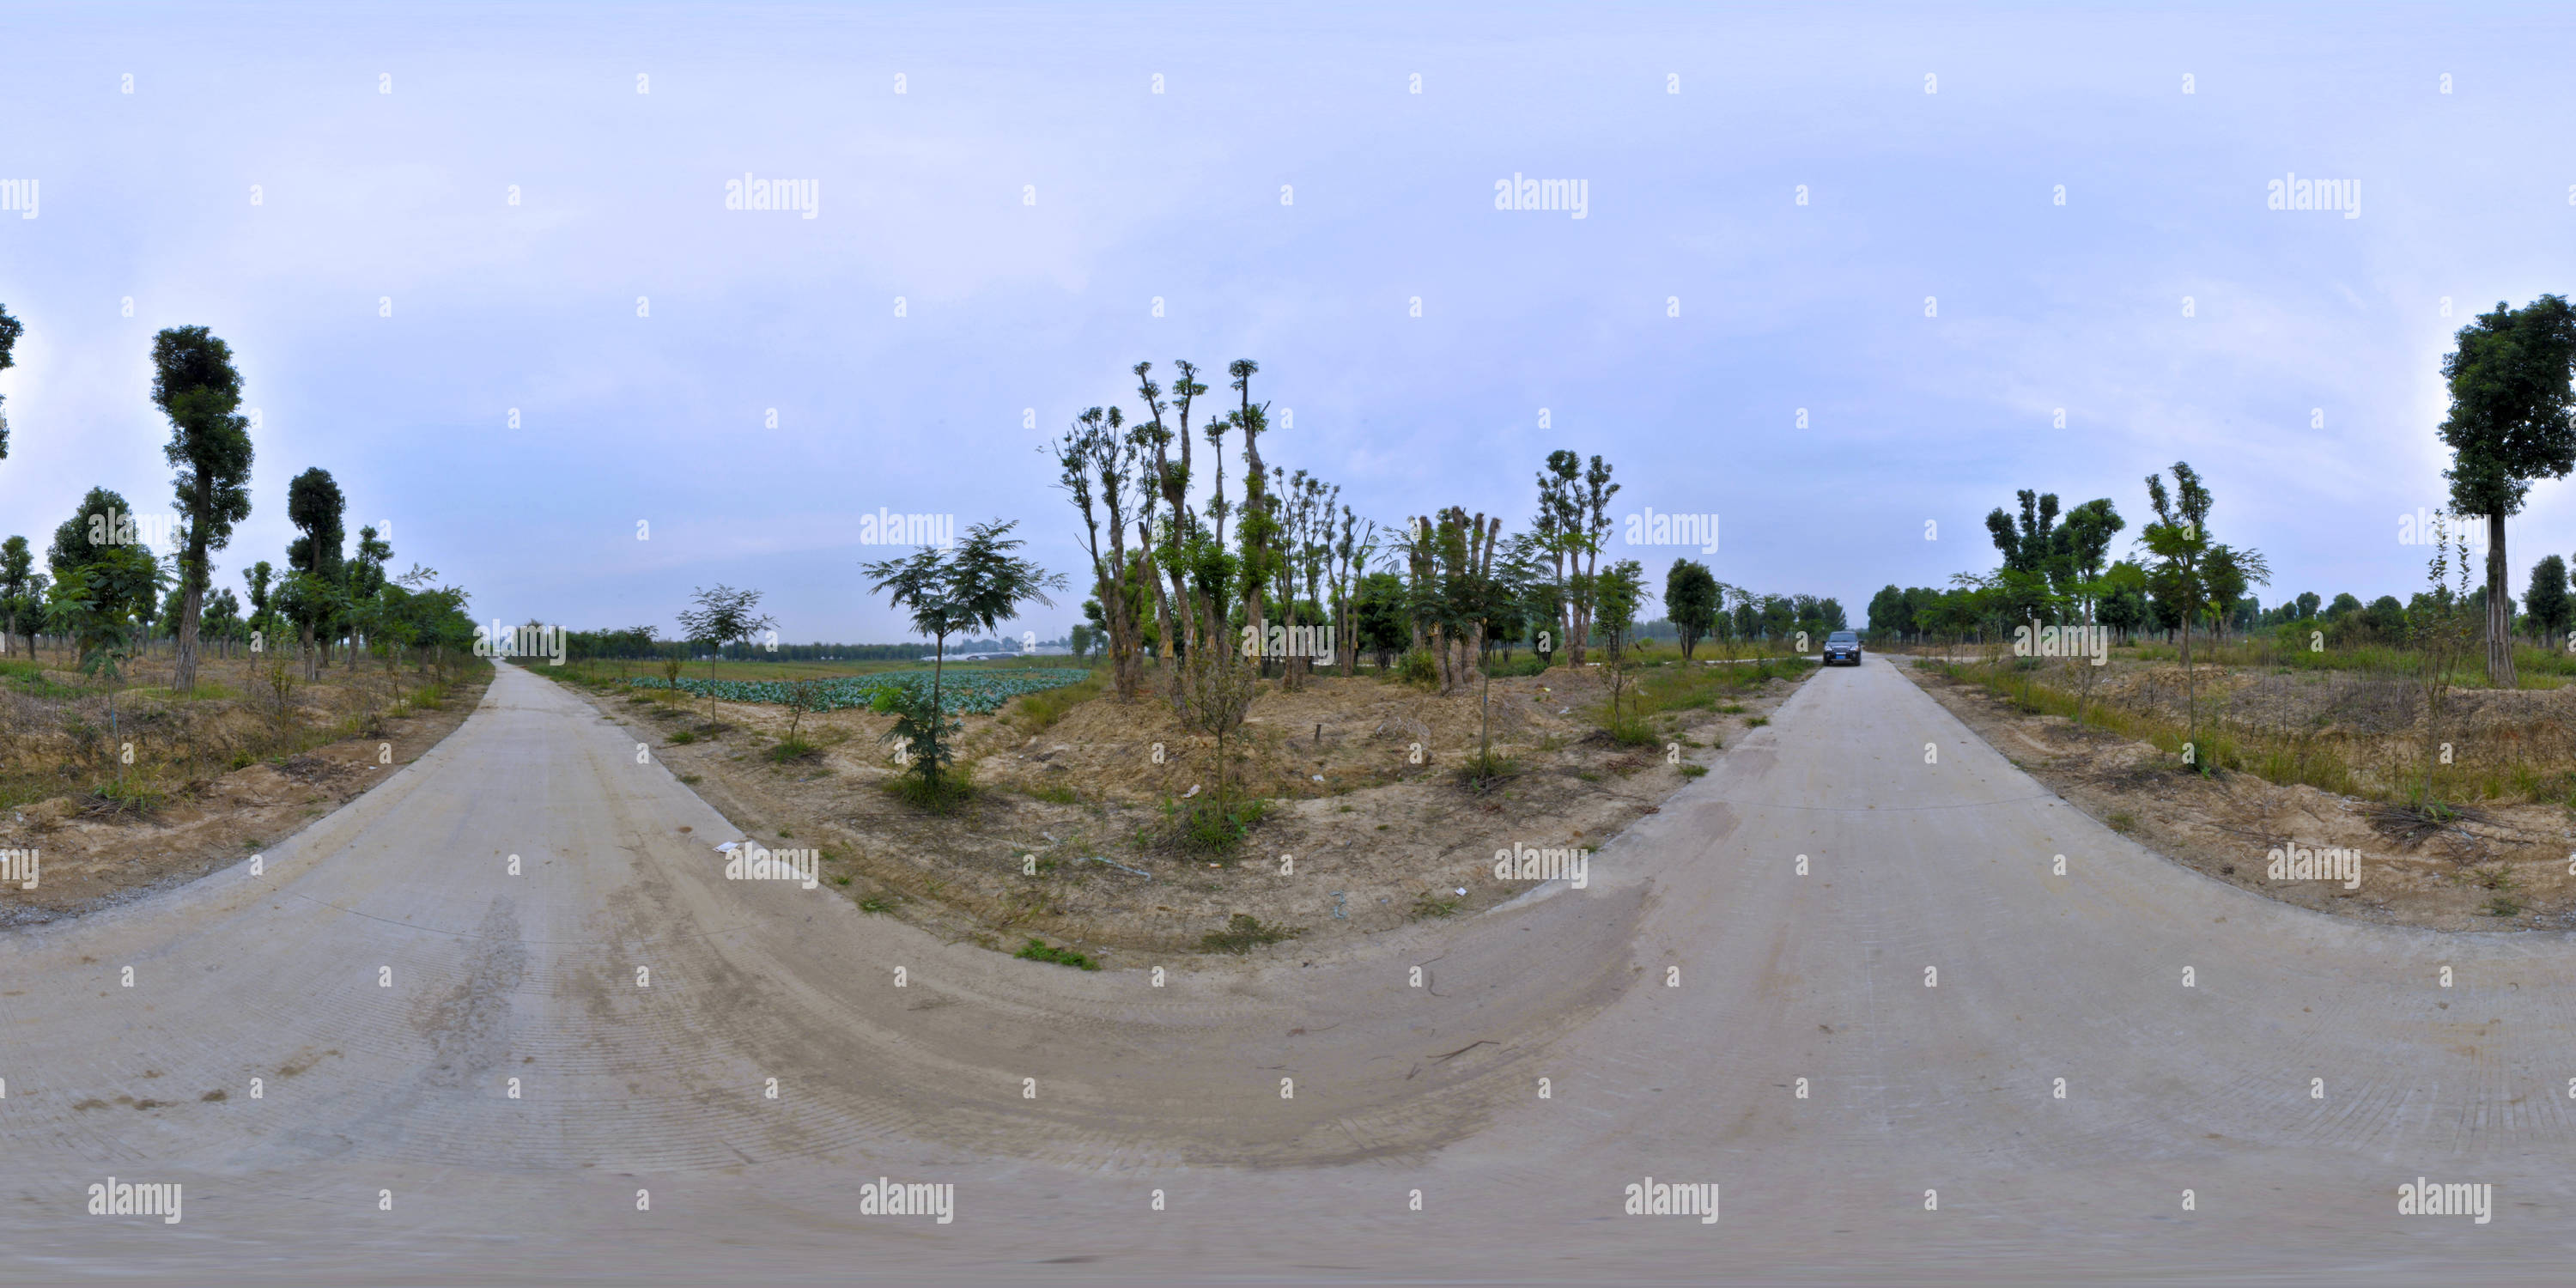 360 degree panoramic view of Ulmus parvifolia (194) 分杈榔榆